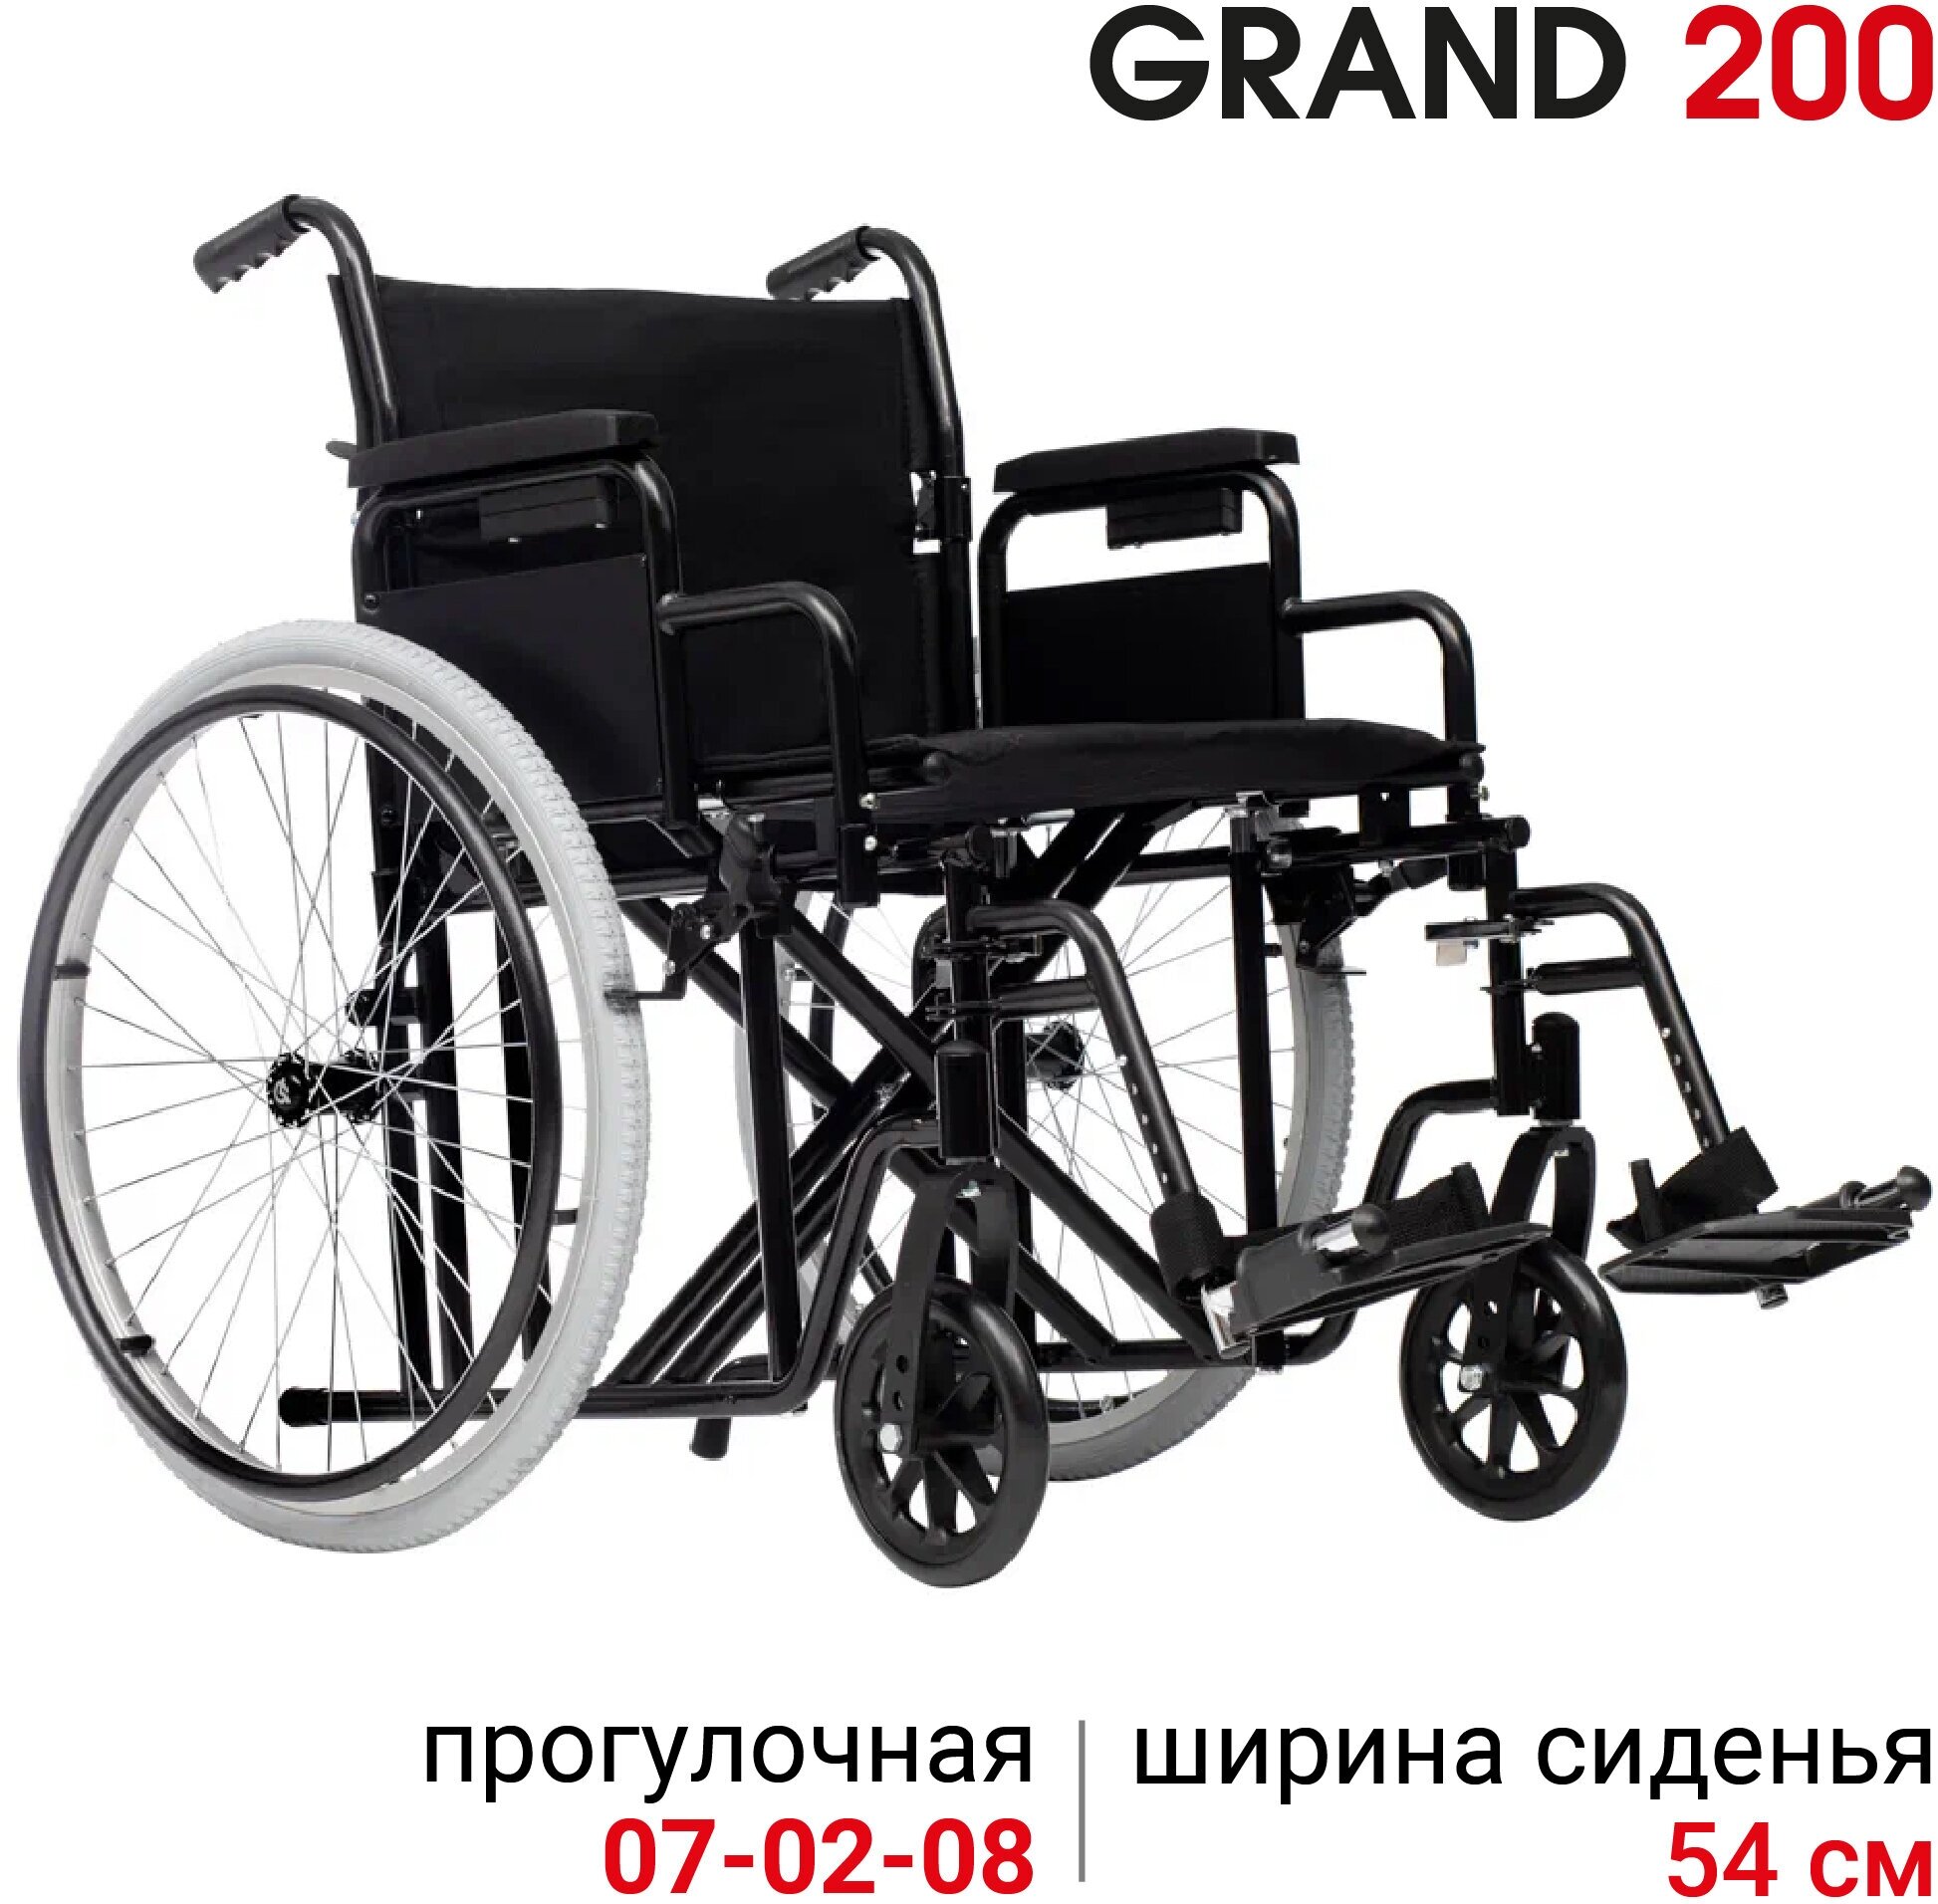 Кресло-коляска механическая повышенной грузоподъемности Ortonica Trend 25/Grand 200 ширина сиденья 54 см передние литые, задние пневматические колеса